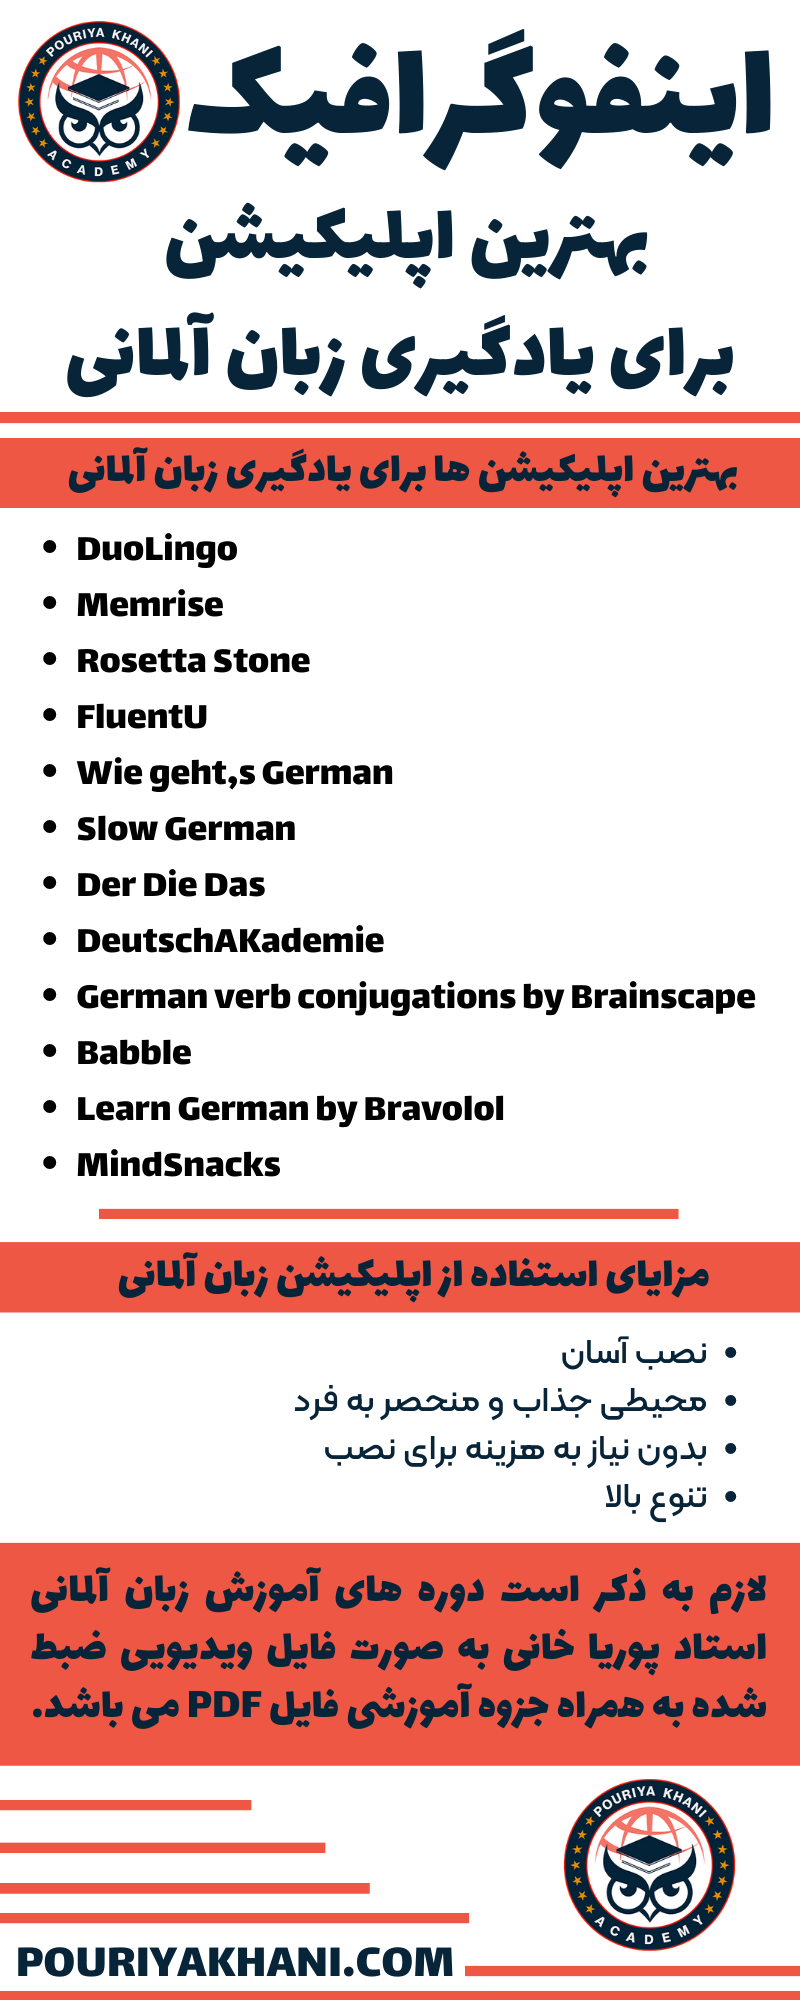 اینفوگرافیک بهترین اپلیکیشن برای یادگیری زبان آلمانی